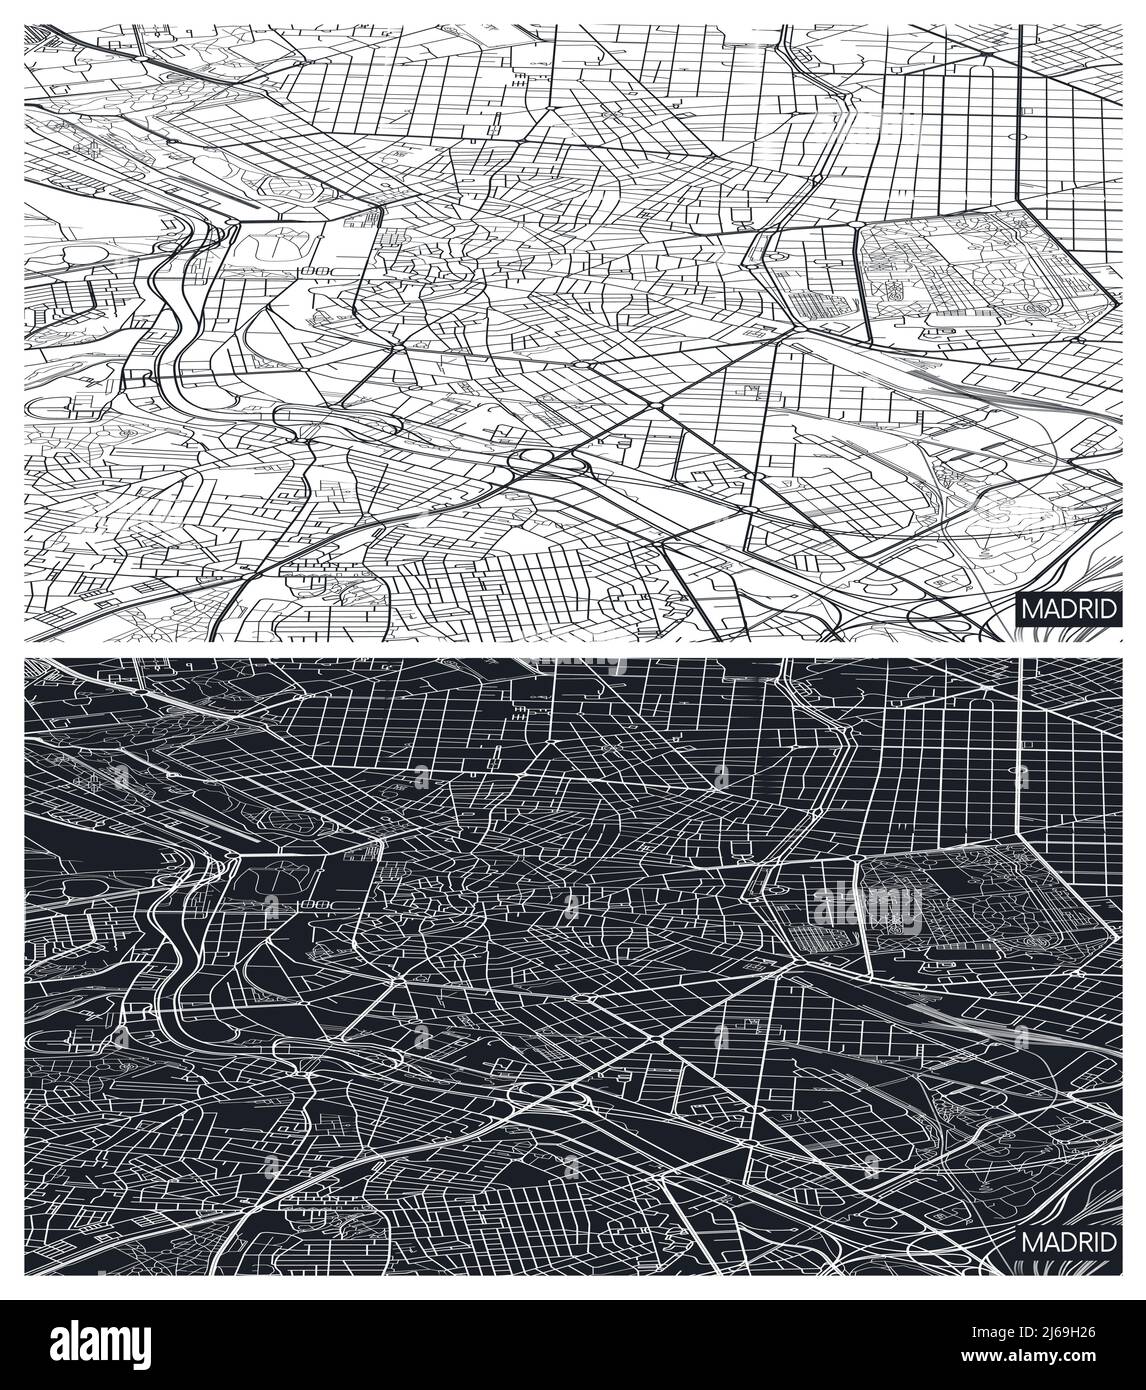 Vue aérienne de dessus carte de la ville Madrid, plan détaillé en noir et blanc, grille urbaine en perspective, illustration vectorielle Illustration de Vecteur